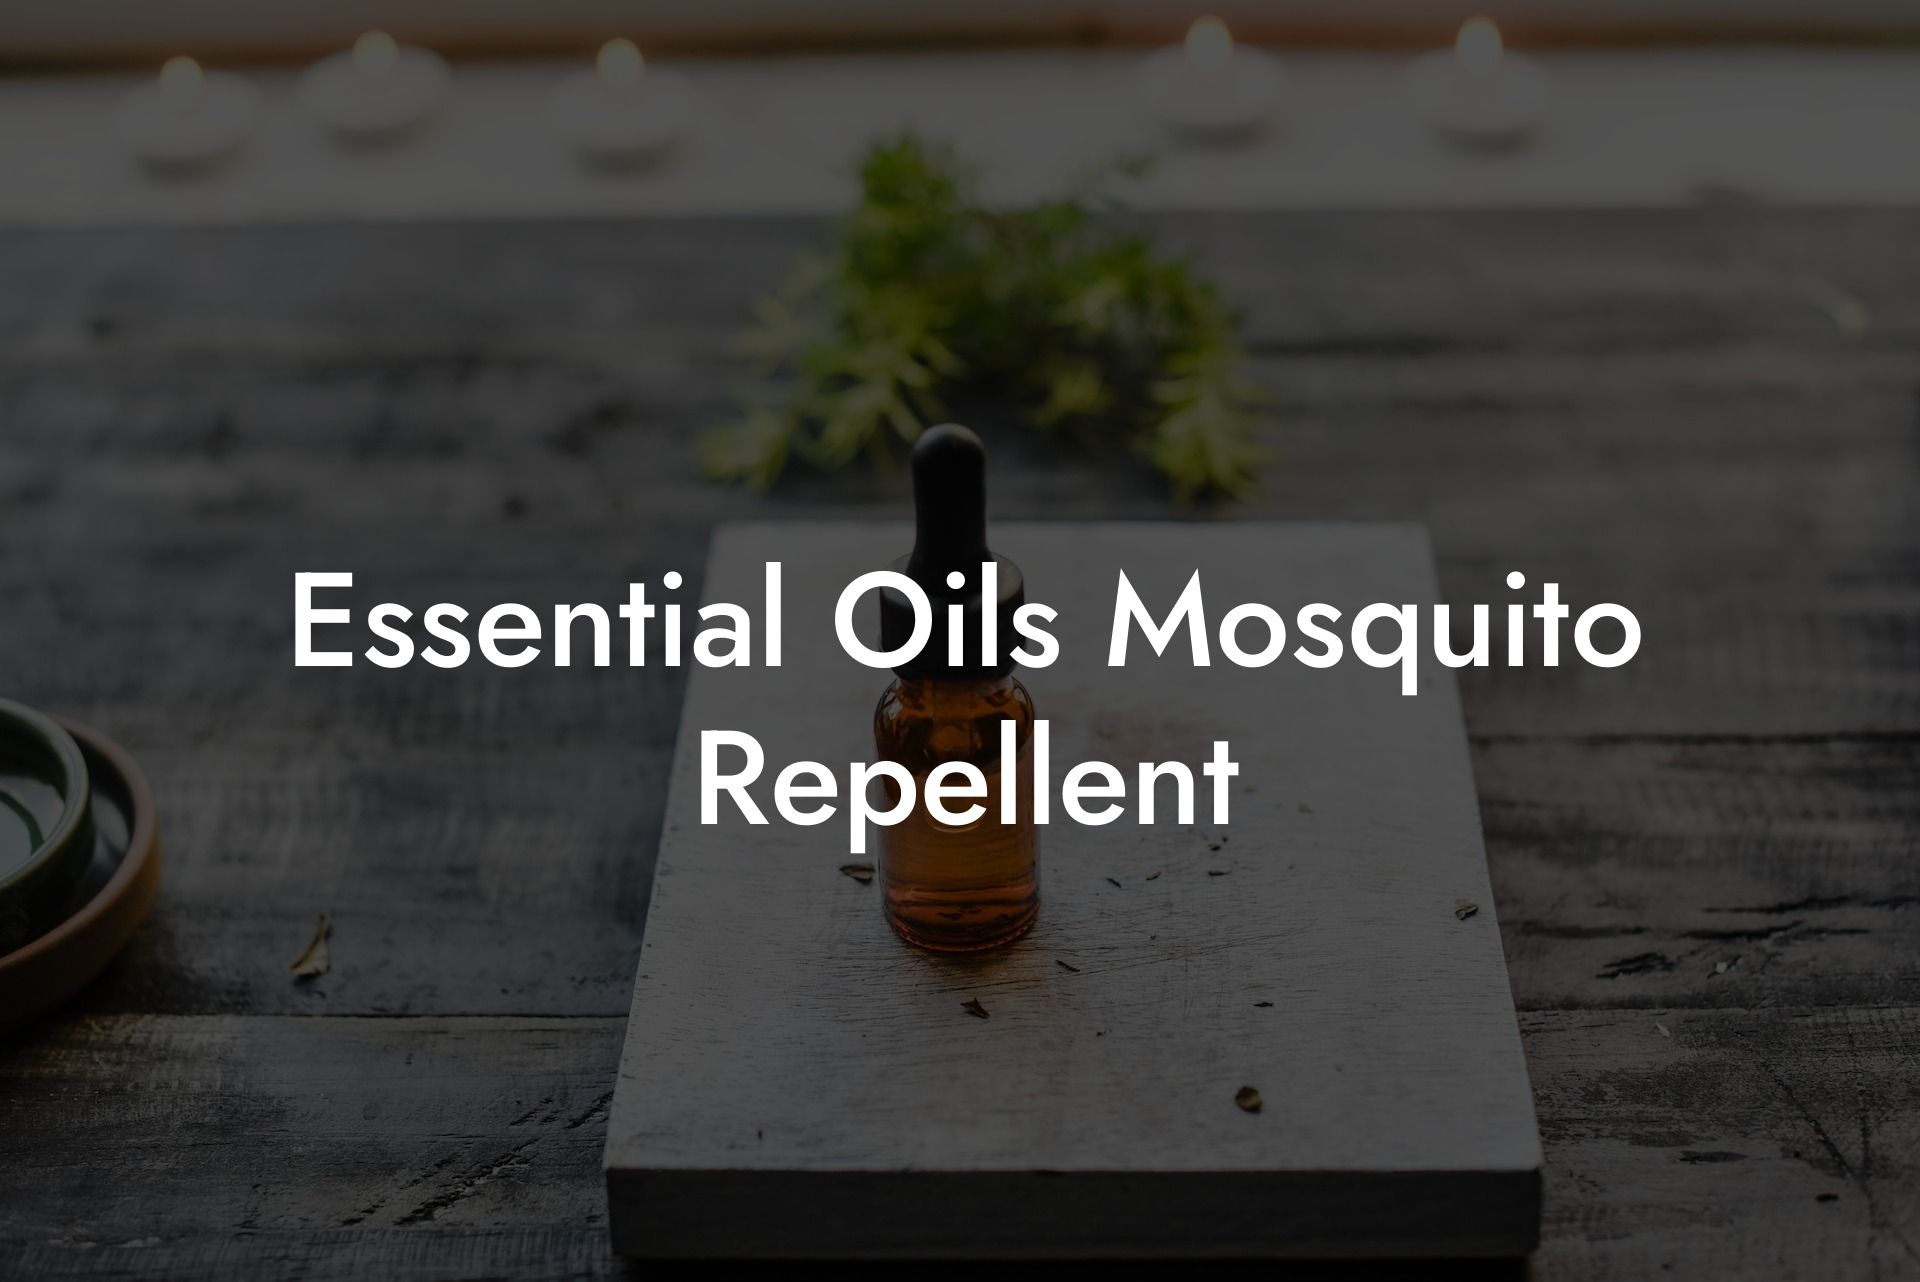 Essential Oils Mosquito Repellent